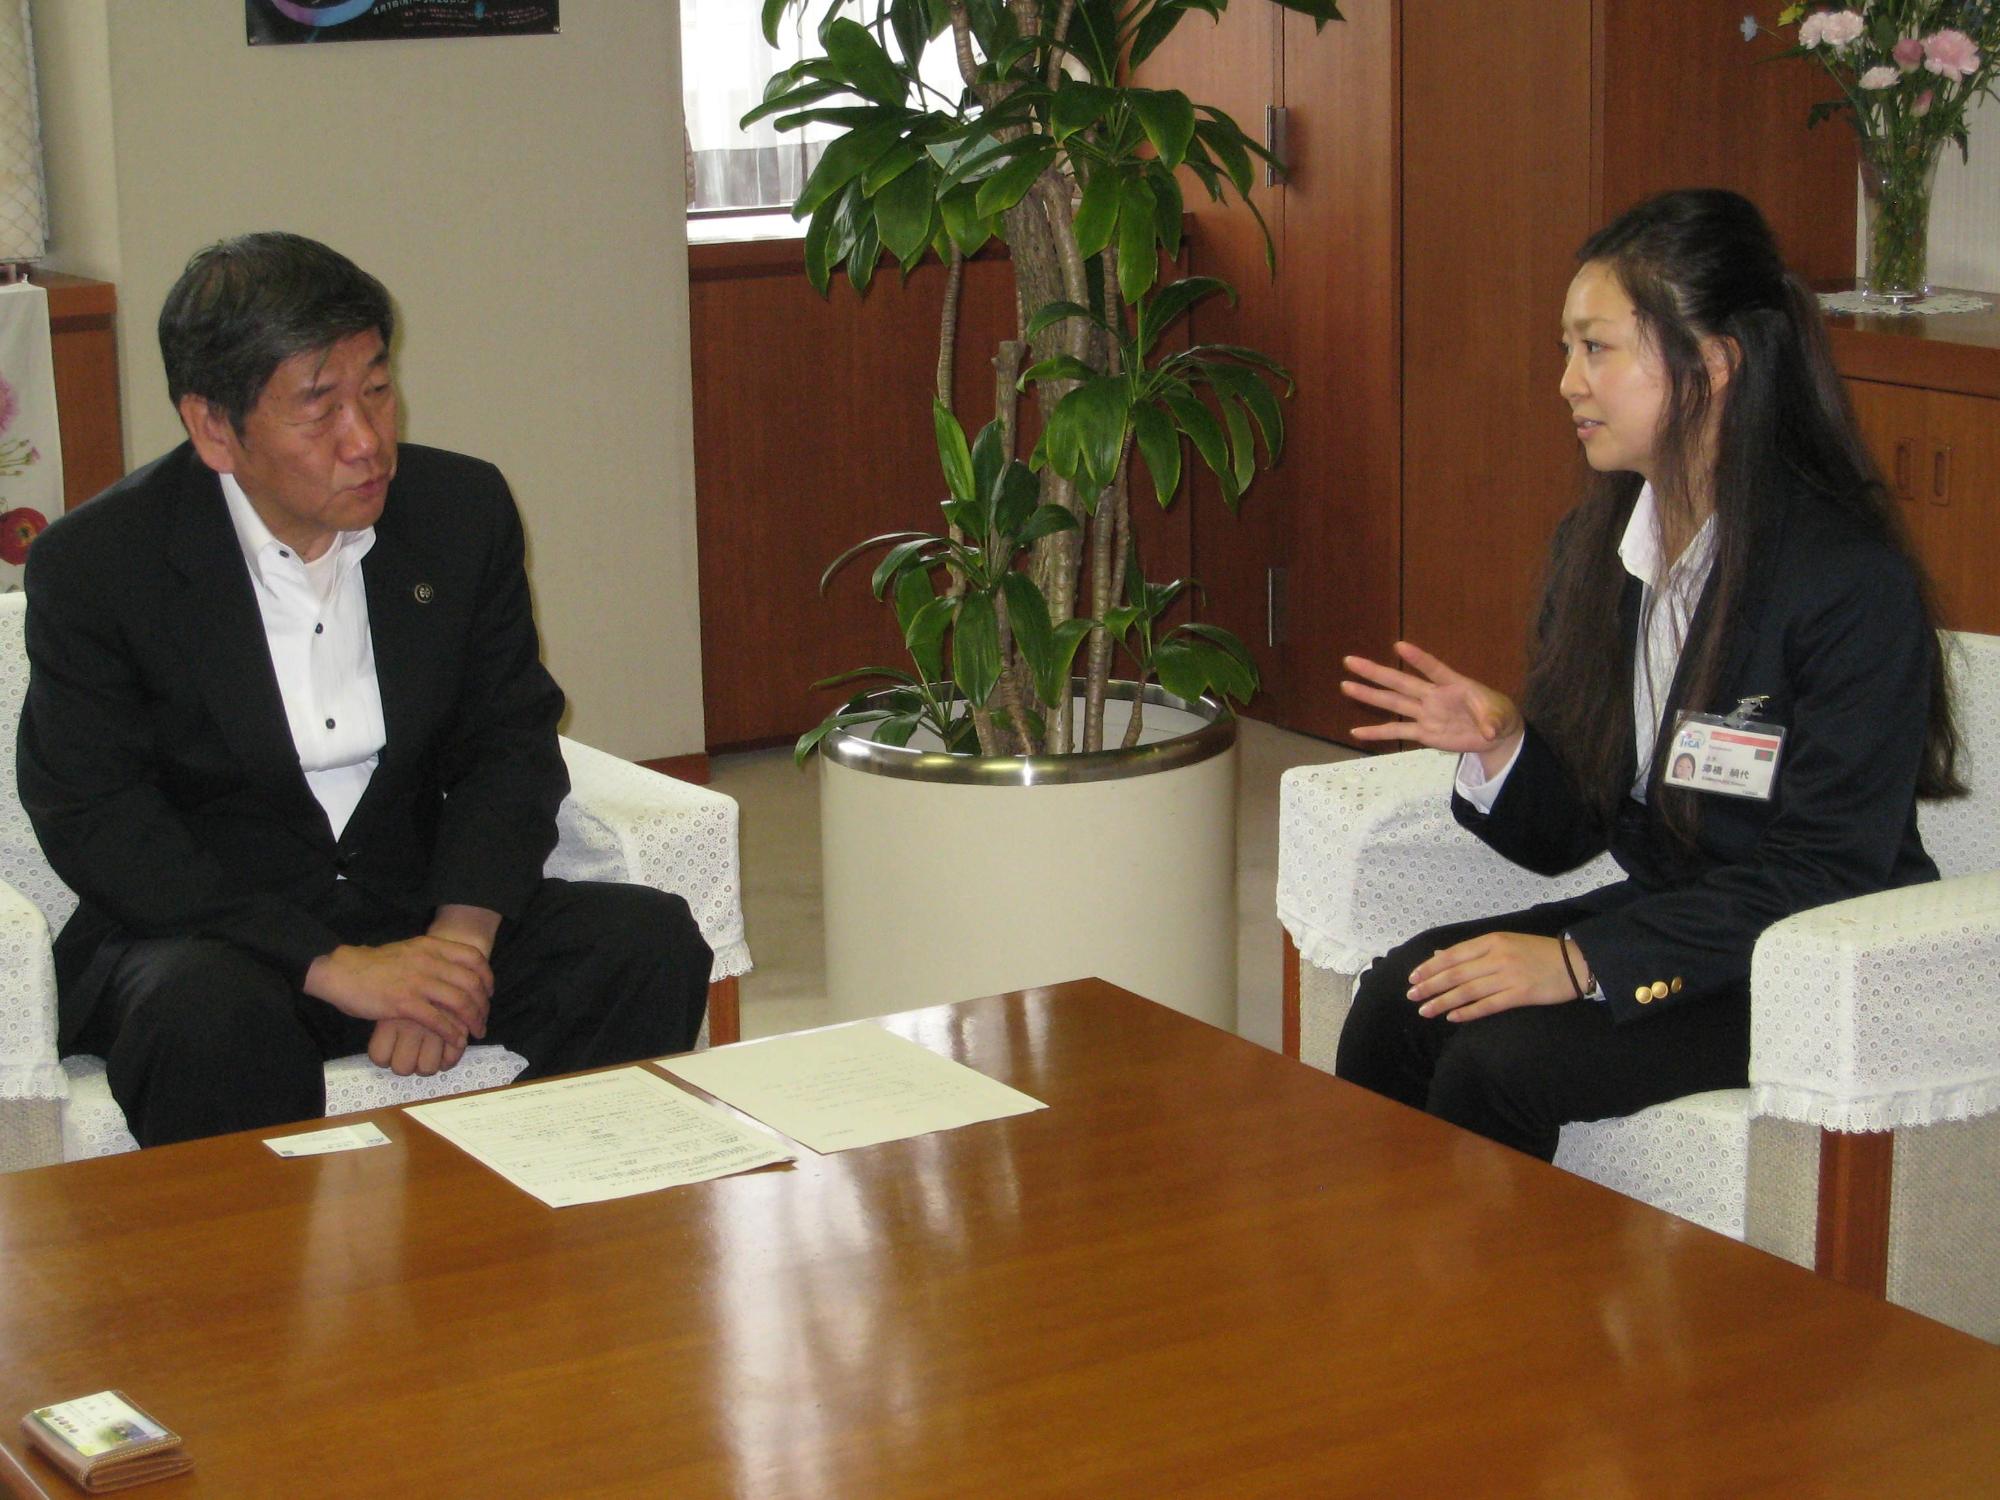 サワハシキヌヨさんが、小林市長に表敬訪問し、会話している写真